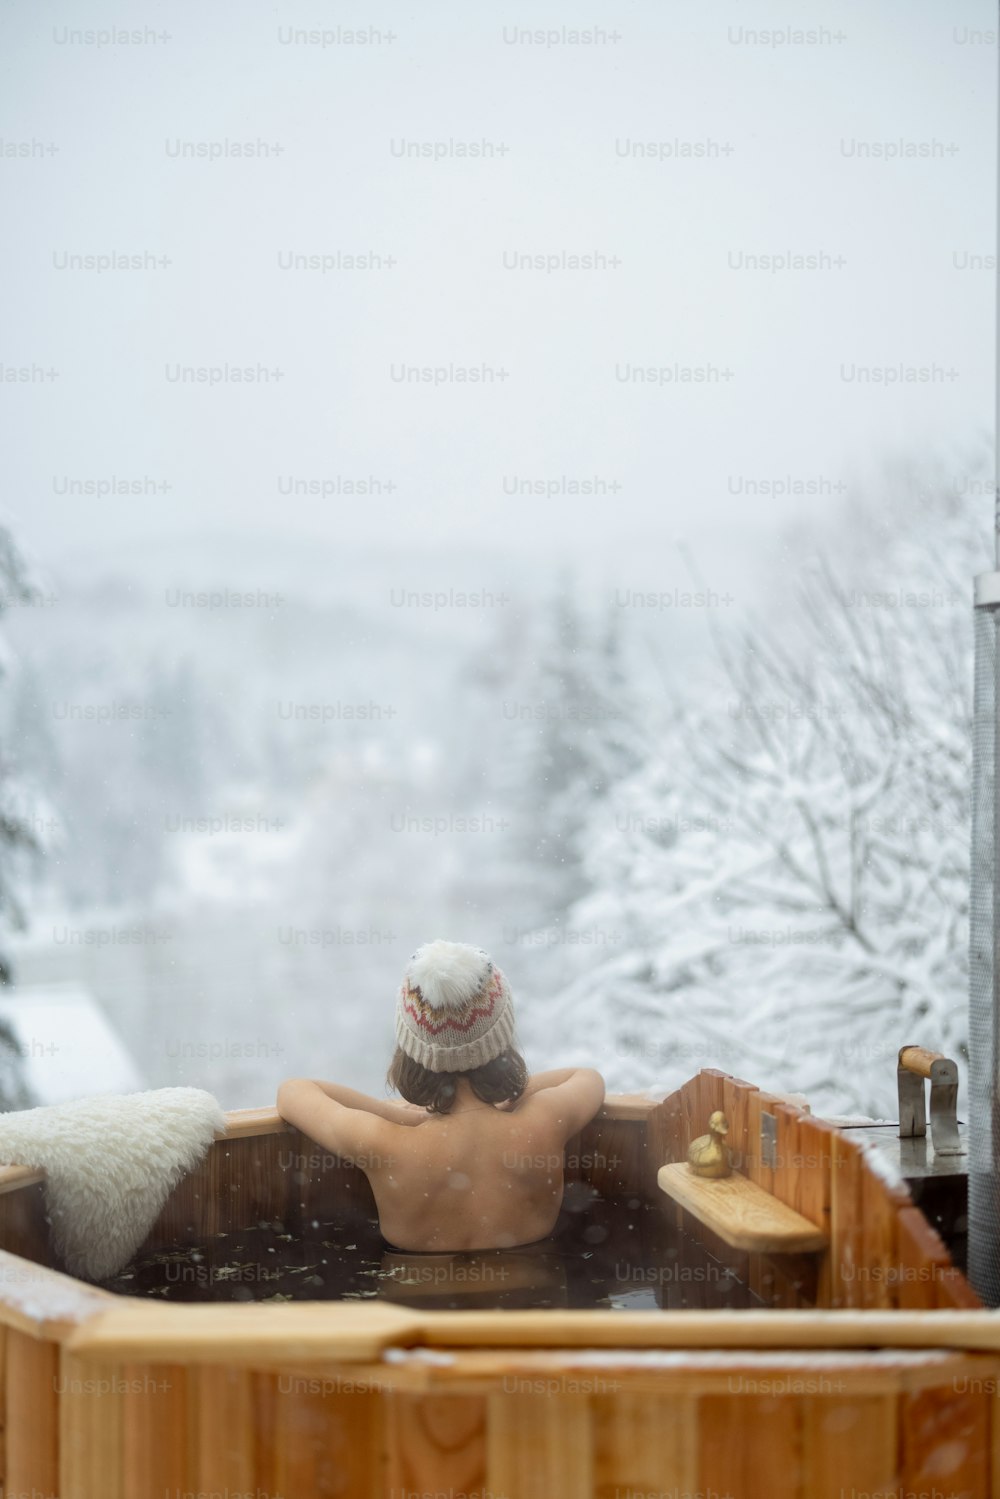 Donna che si rilassa nel bagno caldo all'aperto, sedendosi e godendo di una splendida vista sulle montagne innevate. Vacanze invernali in montagna, concetto di trattamento dell'acqua calda. Donna caucasica che indossa il cappello invernale